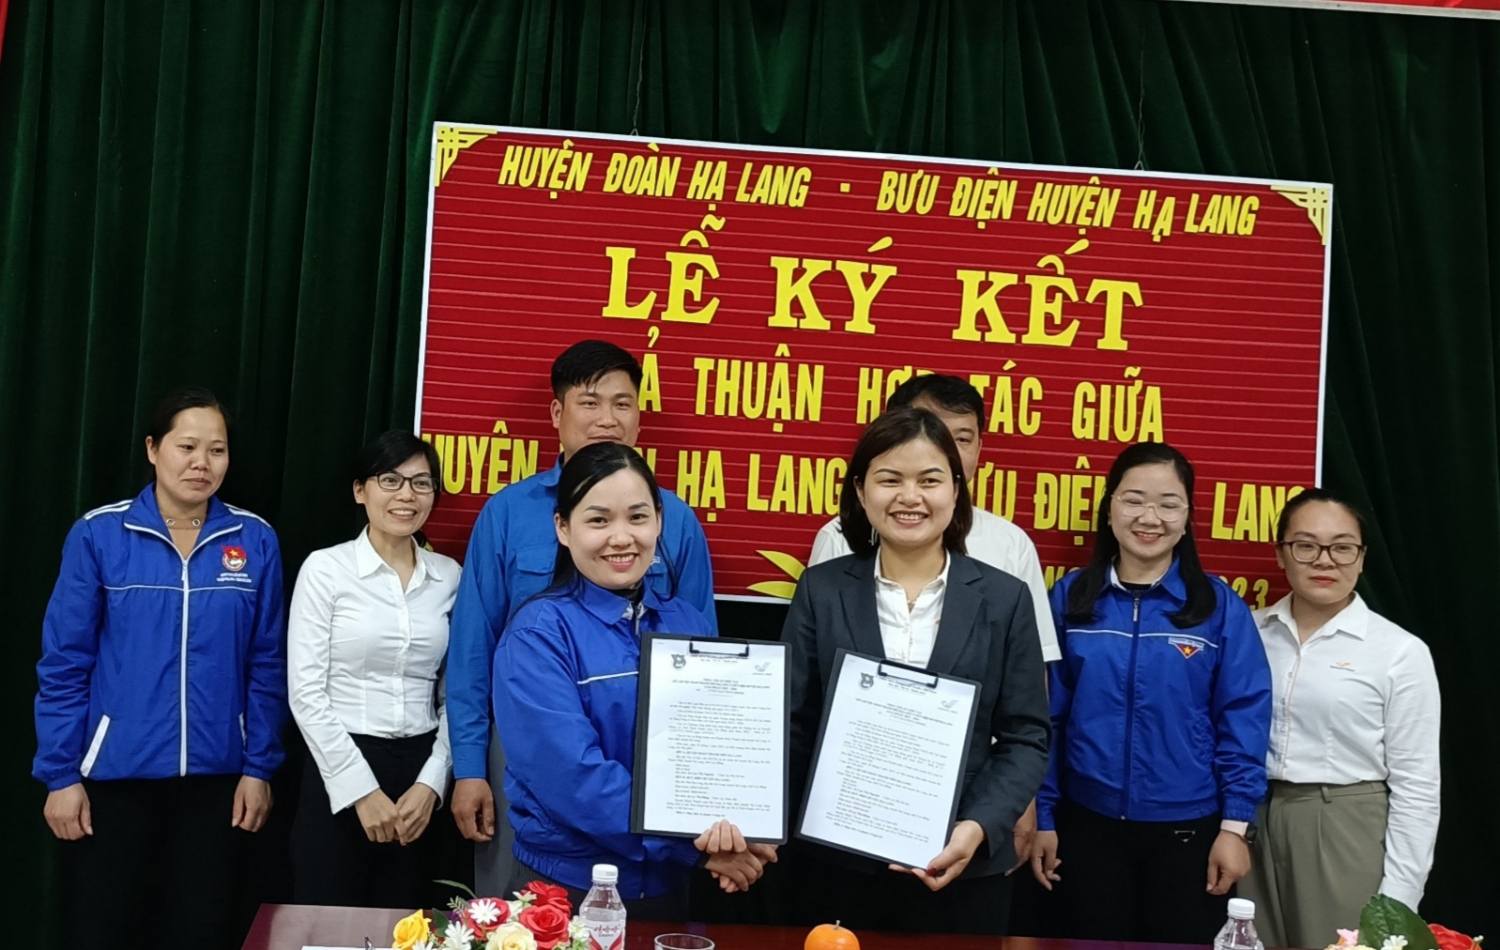 Huyện Đoàn Hạ Lang và Bưu điện huyện Hạ Lang ký kết thỏa thuận hợp tác